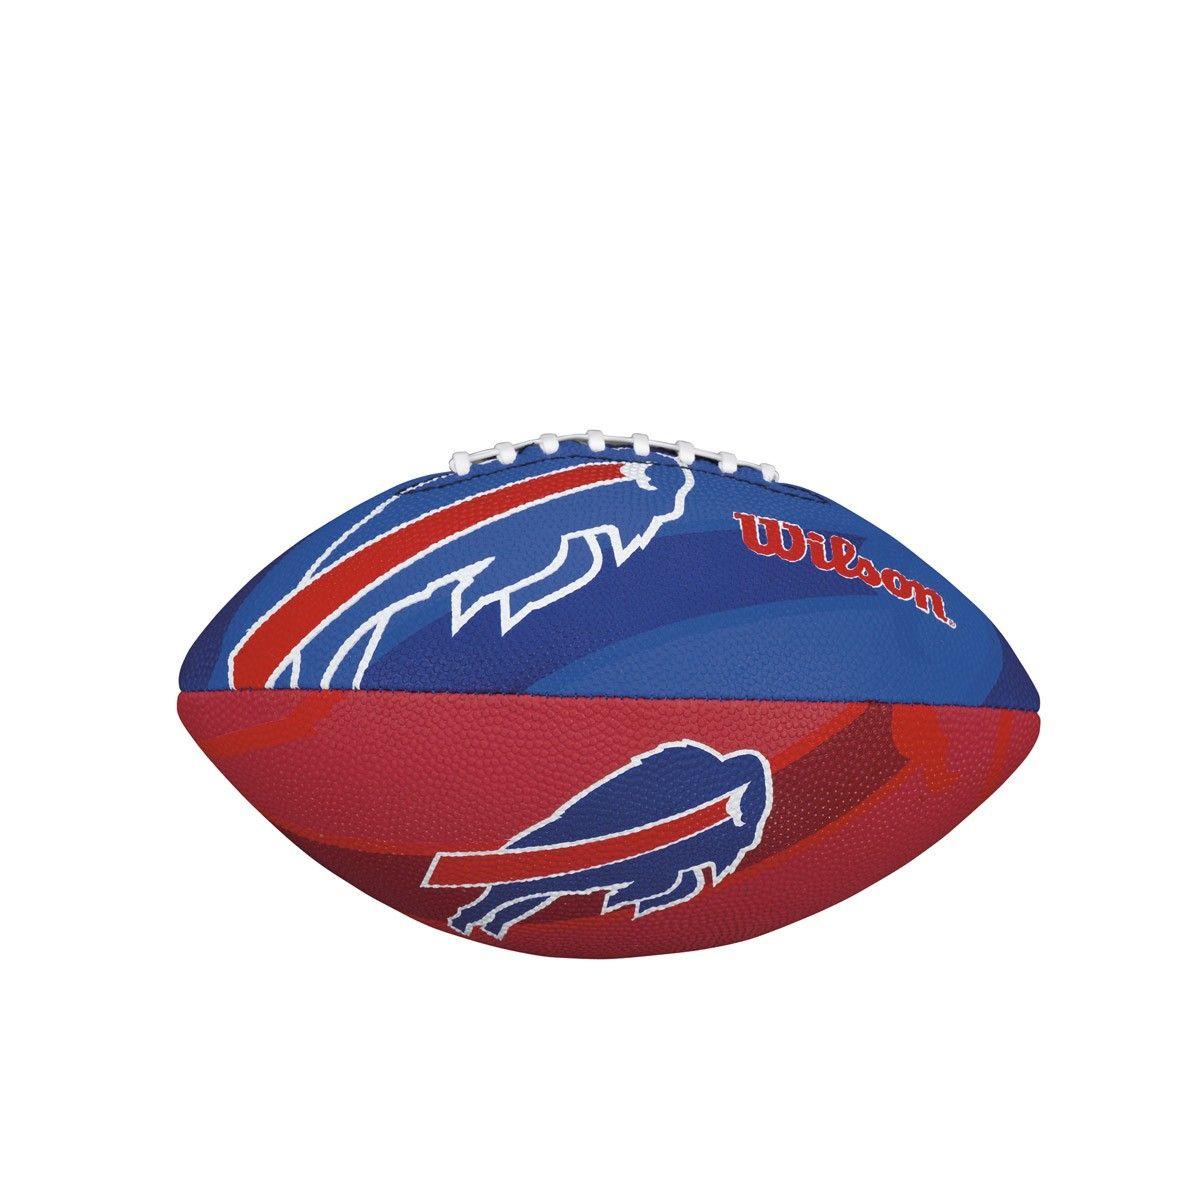 Bills Football Logo - Wilson NFL Buffalo Bills Junior Team Logo Football 883813846559 | eBay